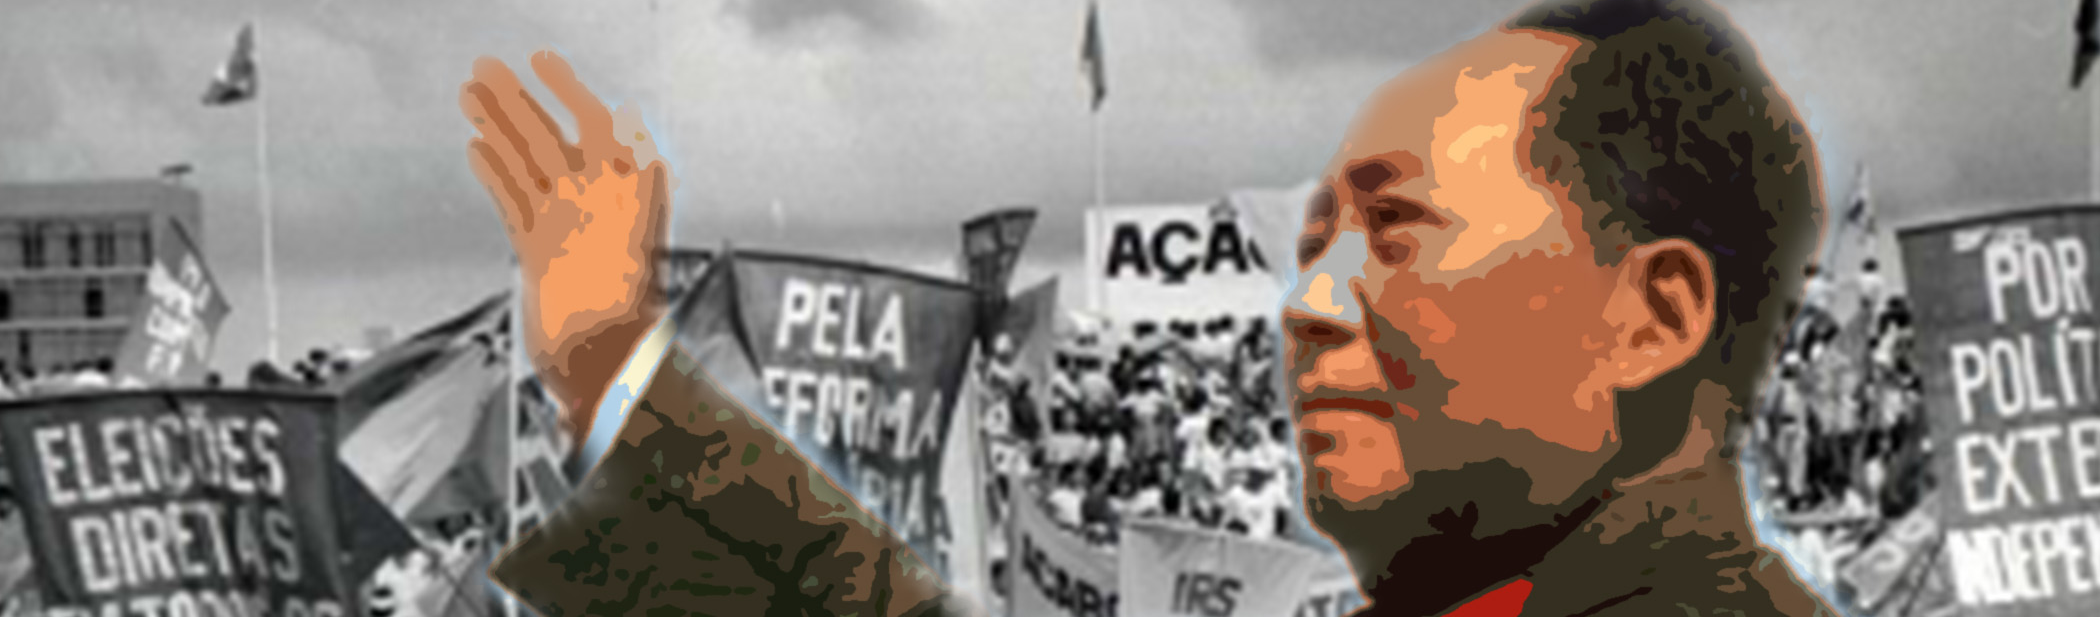 Urariano Mota | O pensamento de Mao para os jovens brasileiros na Ditadura